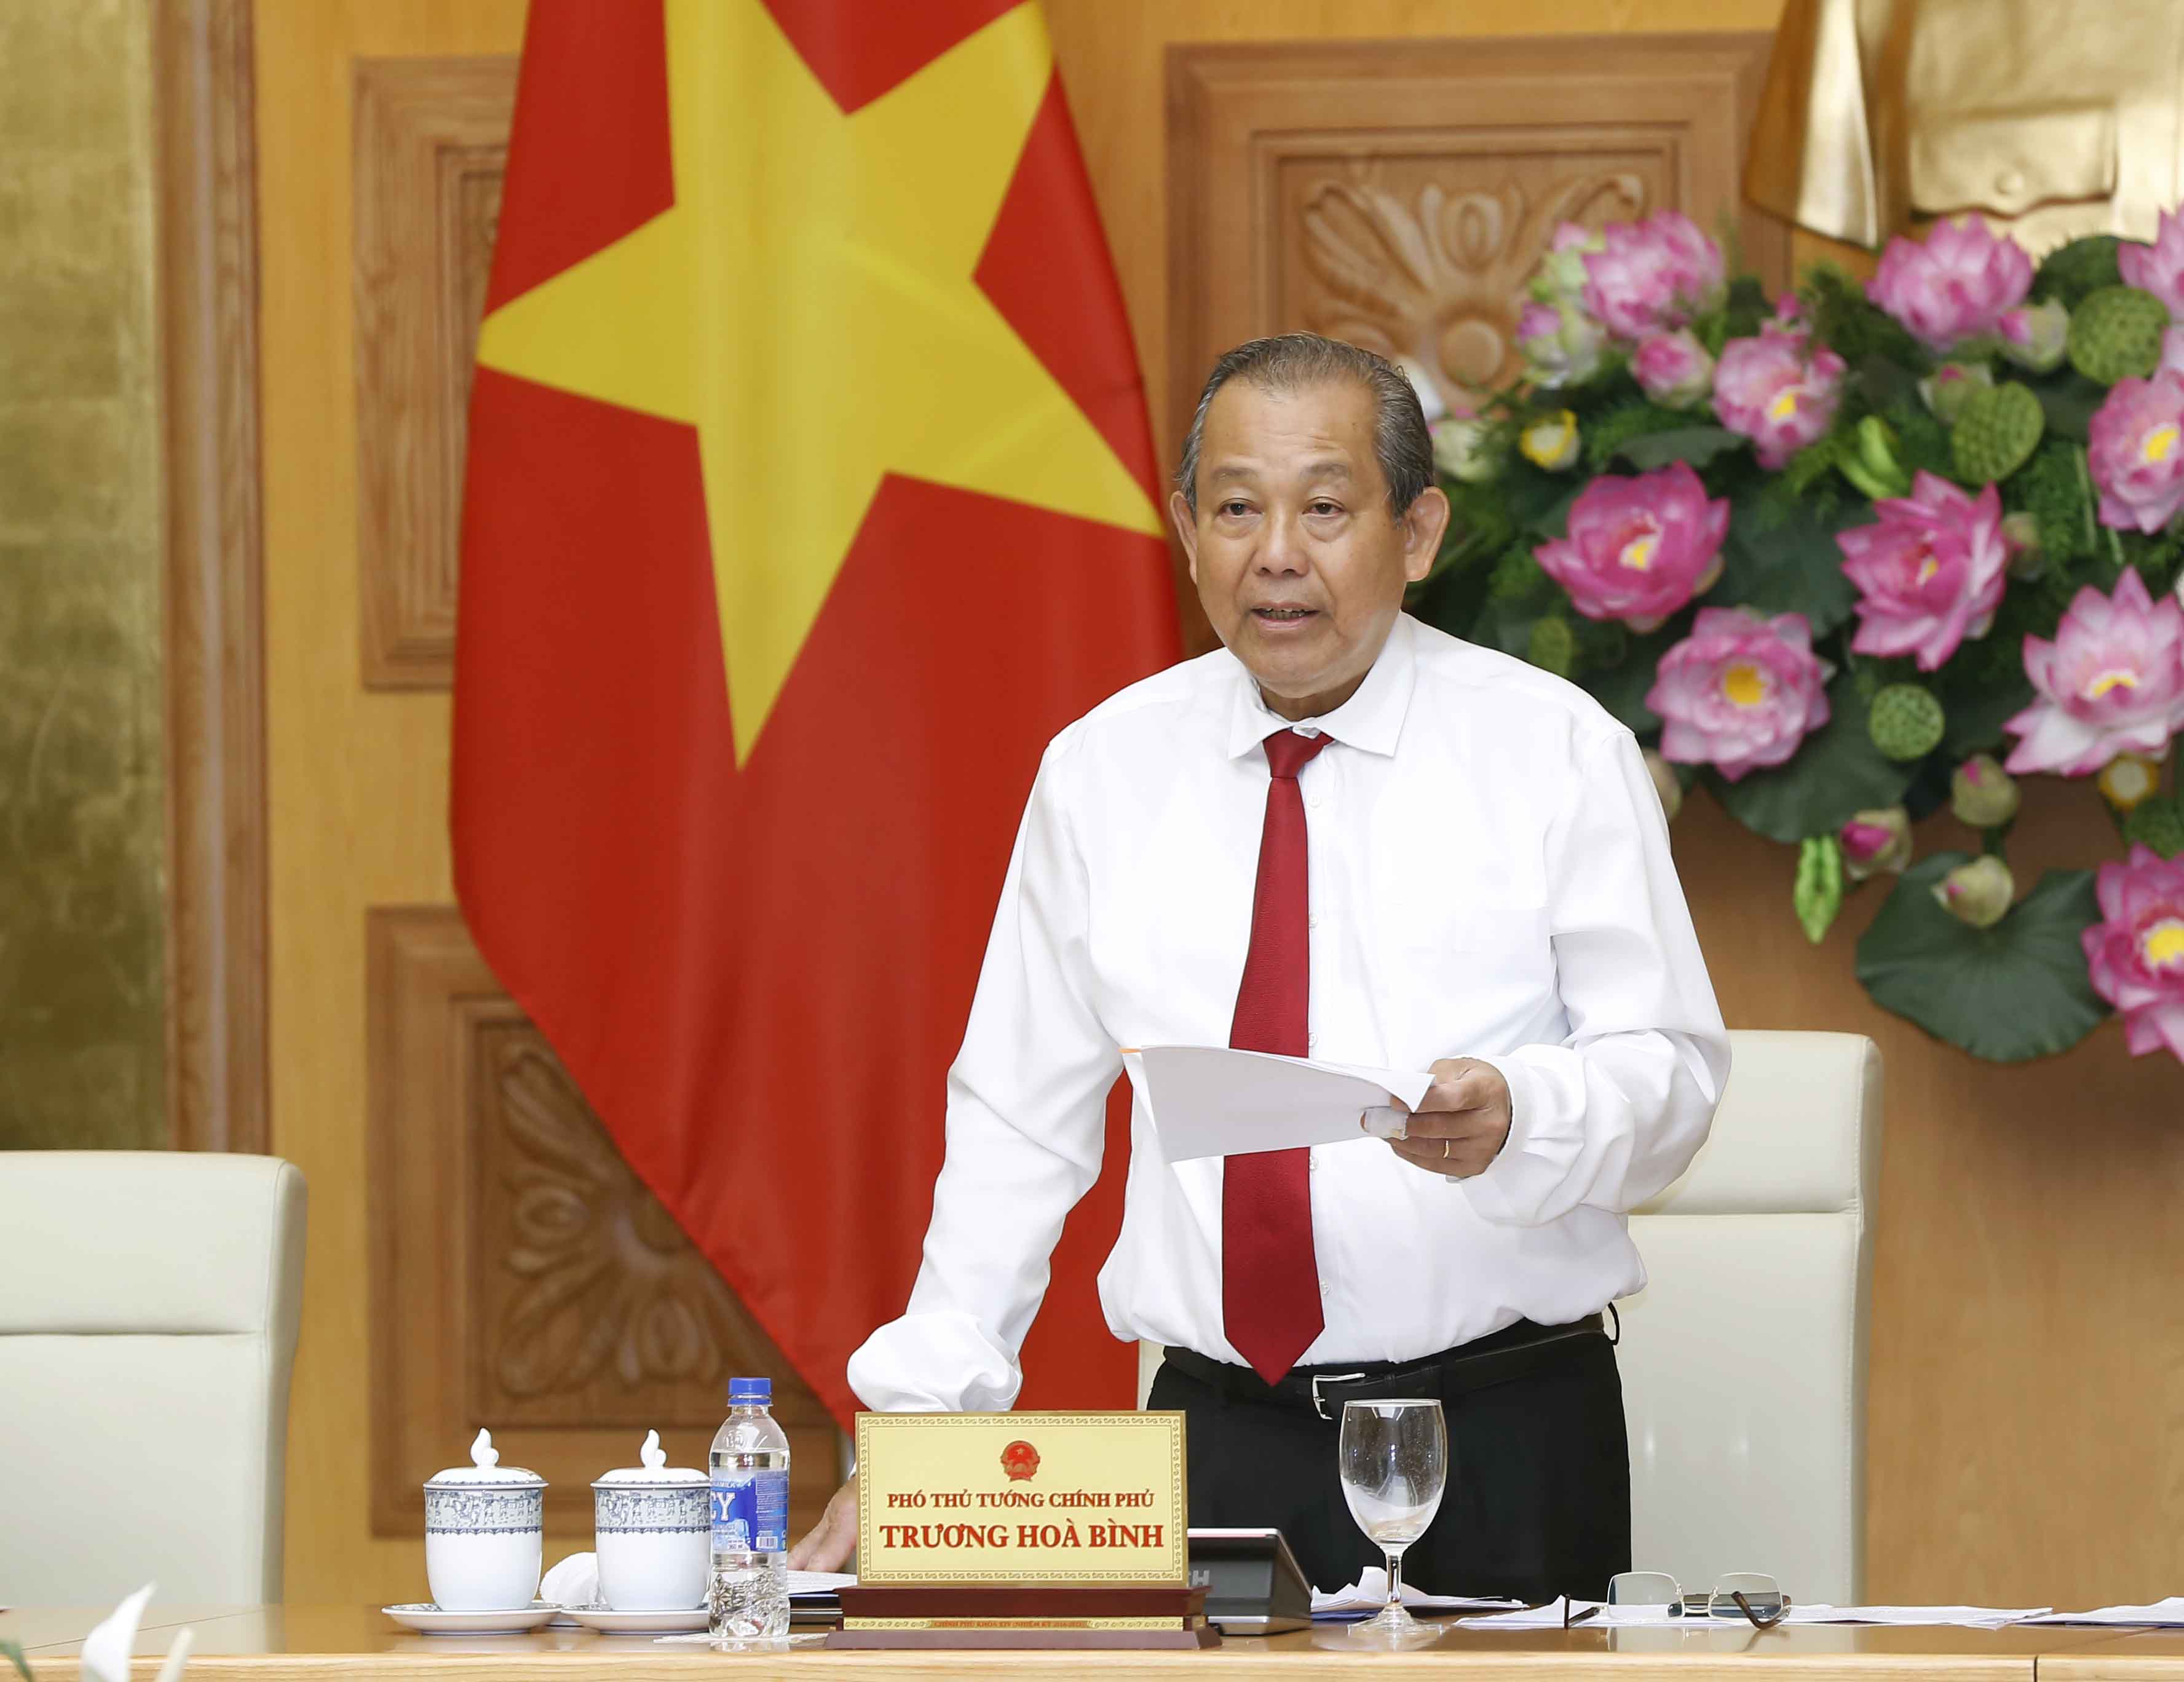 Phó Thủ tướng Thường trực Chính phủ Trương Hòa Bình chỉ đạo xử lý nghiêm vụ việc phụ nữ người nước ngoài bị sàm sỡ ở Hồ Tây.